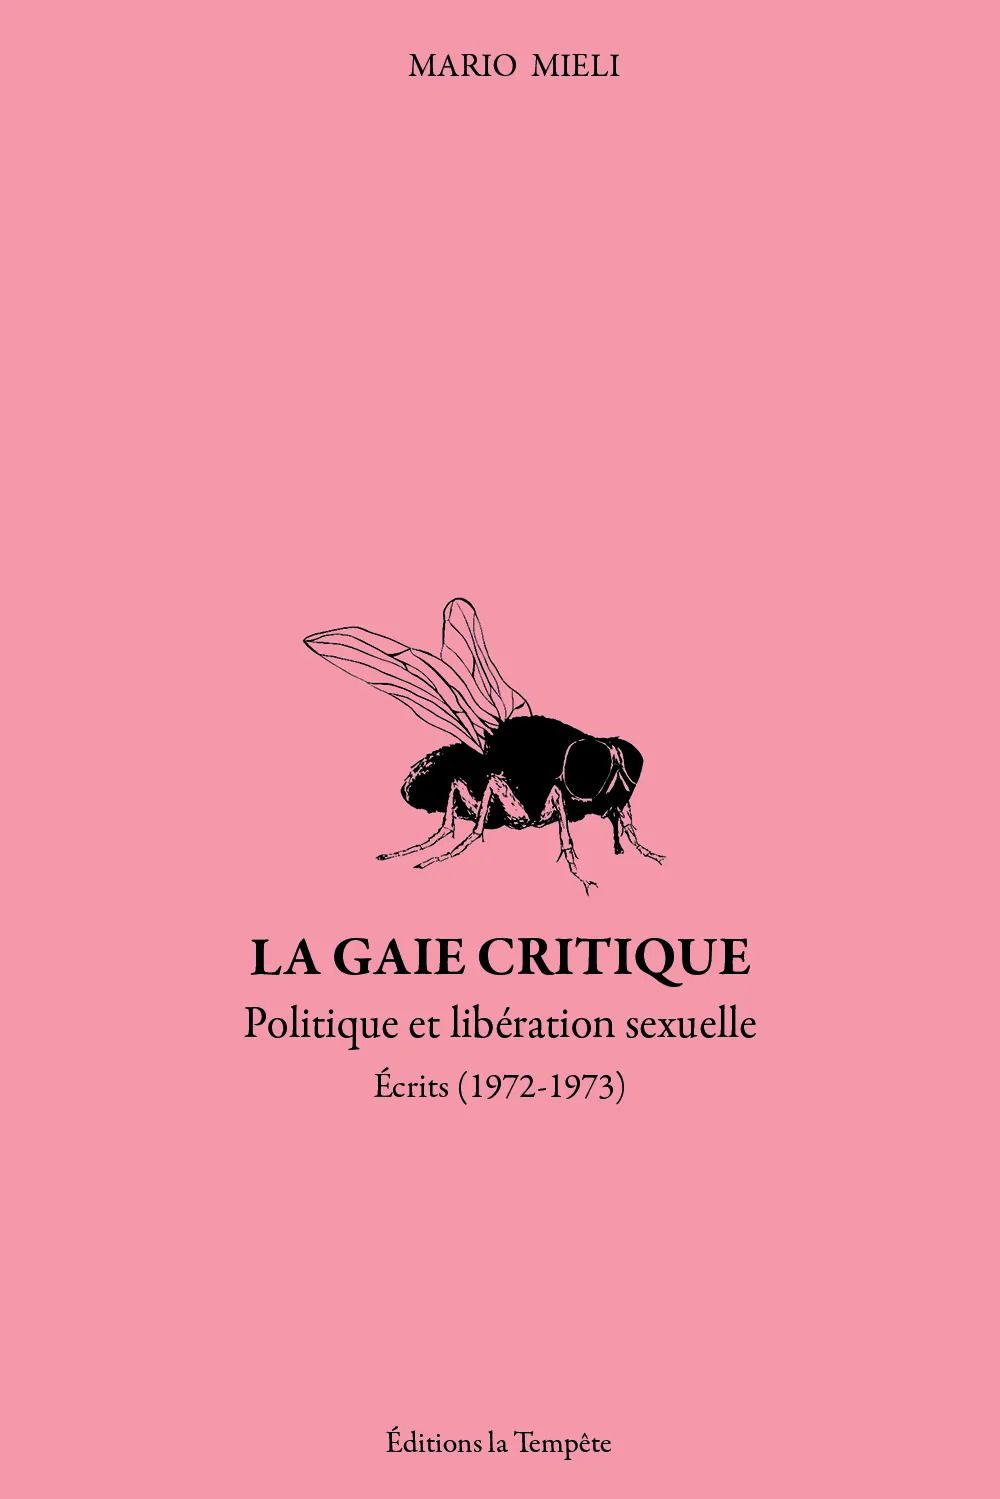 Mario Mieli, La gaie critique (Écrits 1972-1973) (trad. L. Maver)